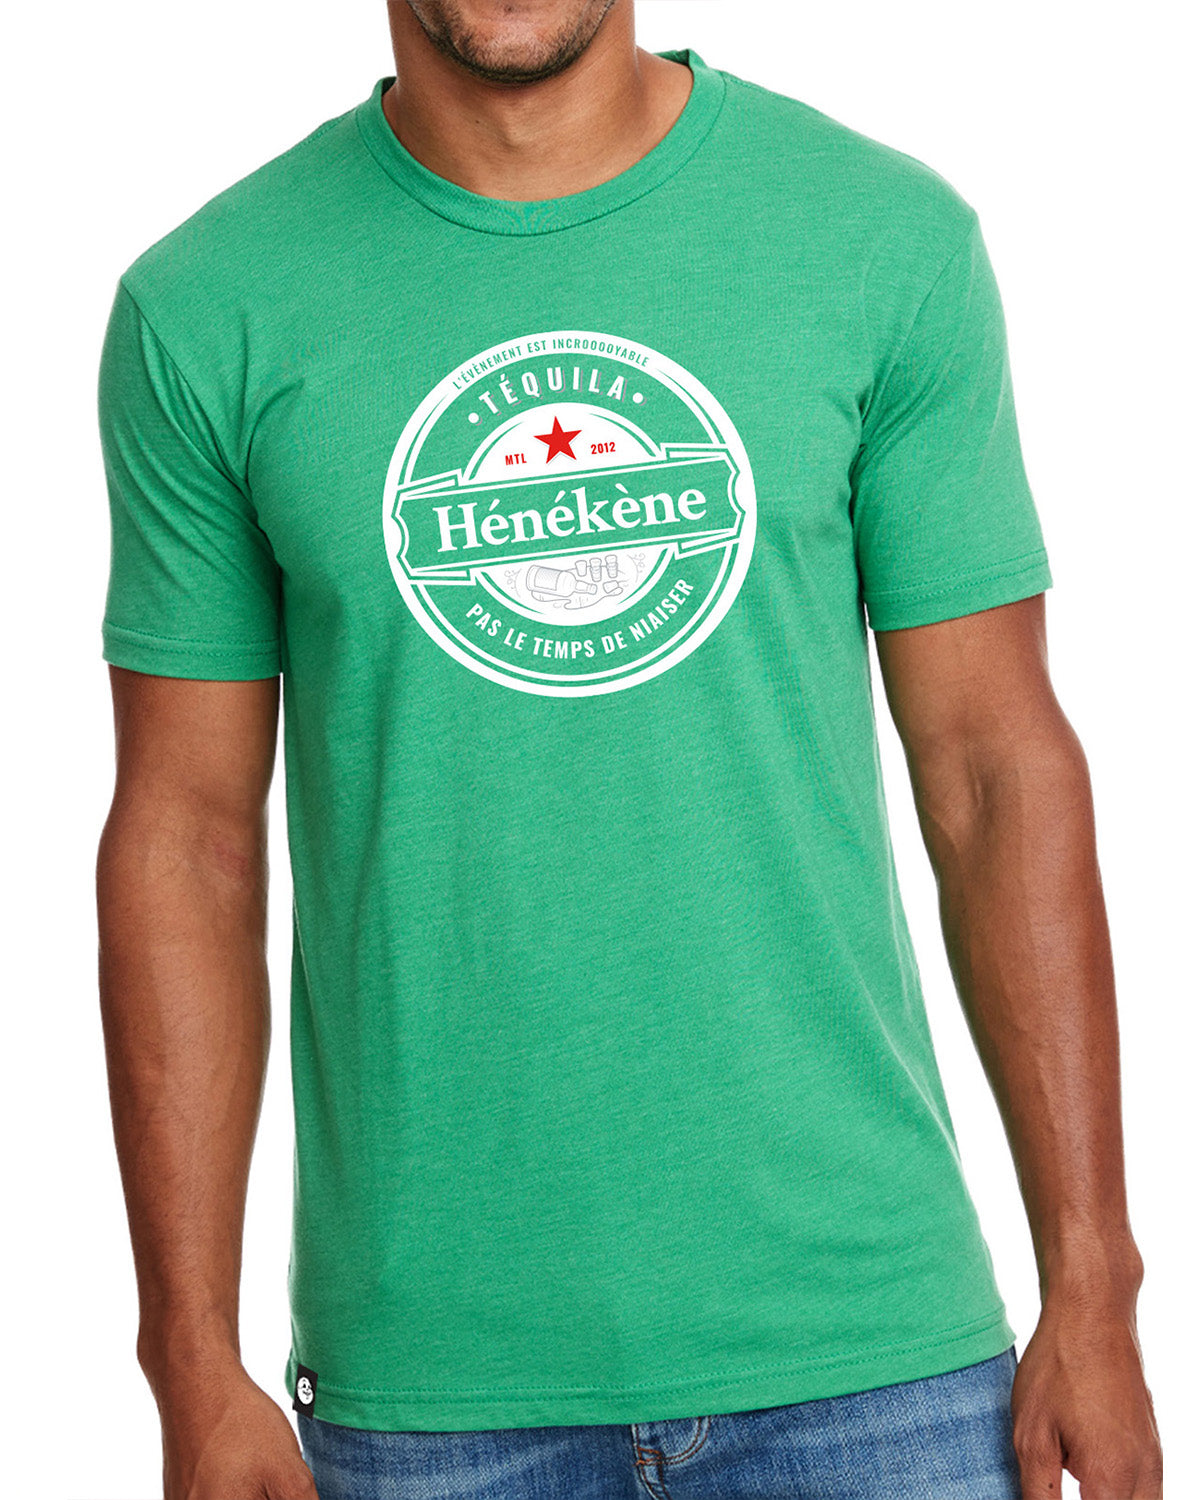 Phoque Apparel - T-shirt : Green "Téquila Hénékène pas le temps de niaiser"